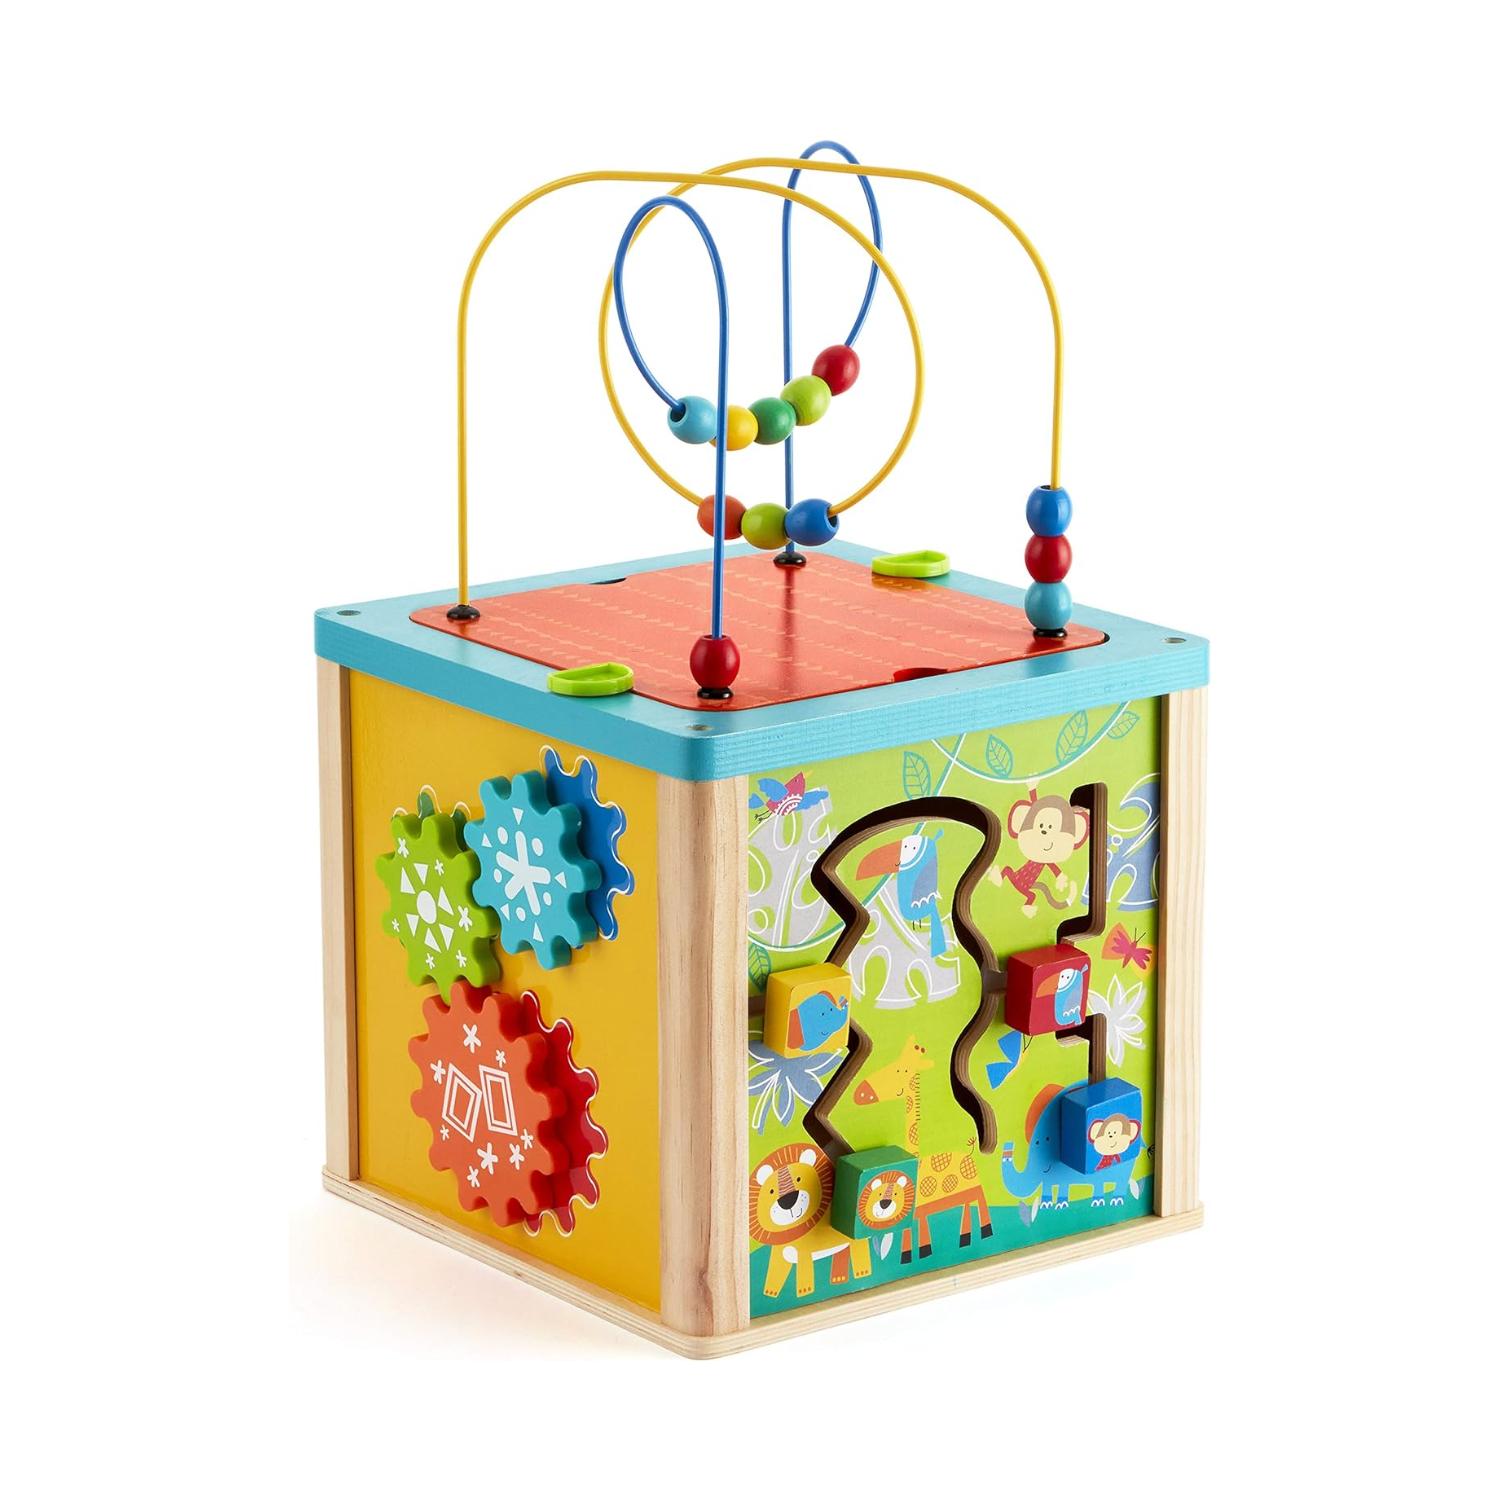 Montessori Imaginarium Wooden Activity Cube